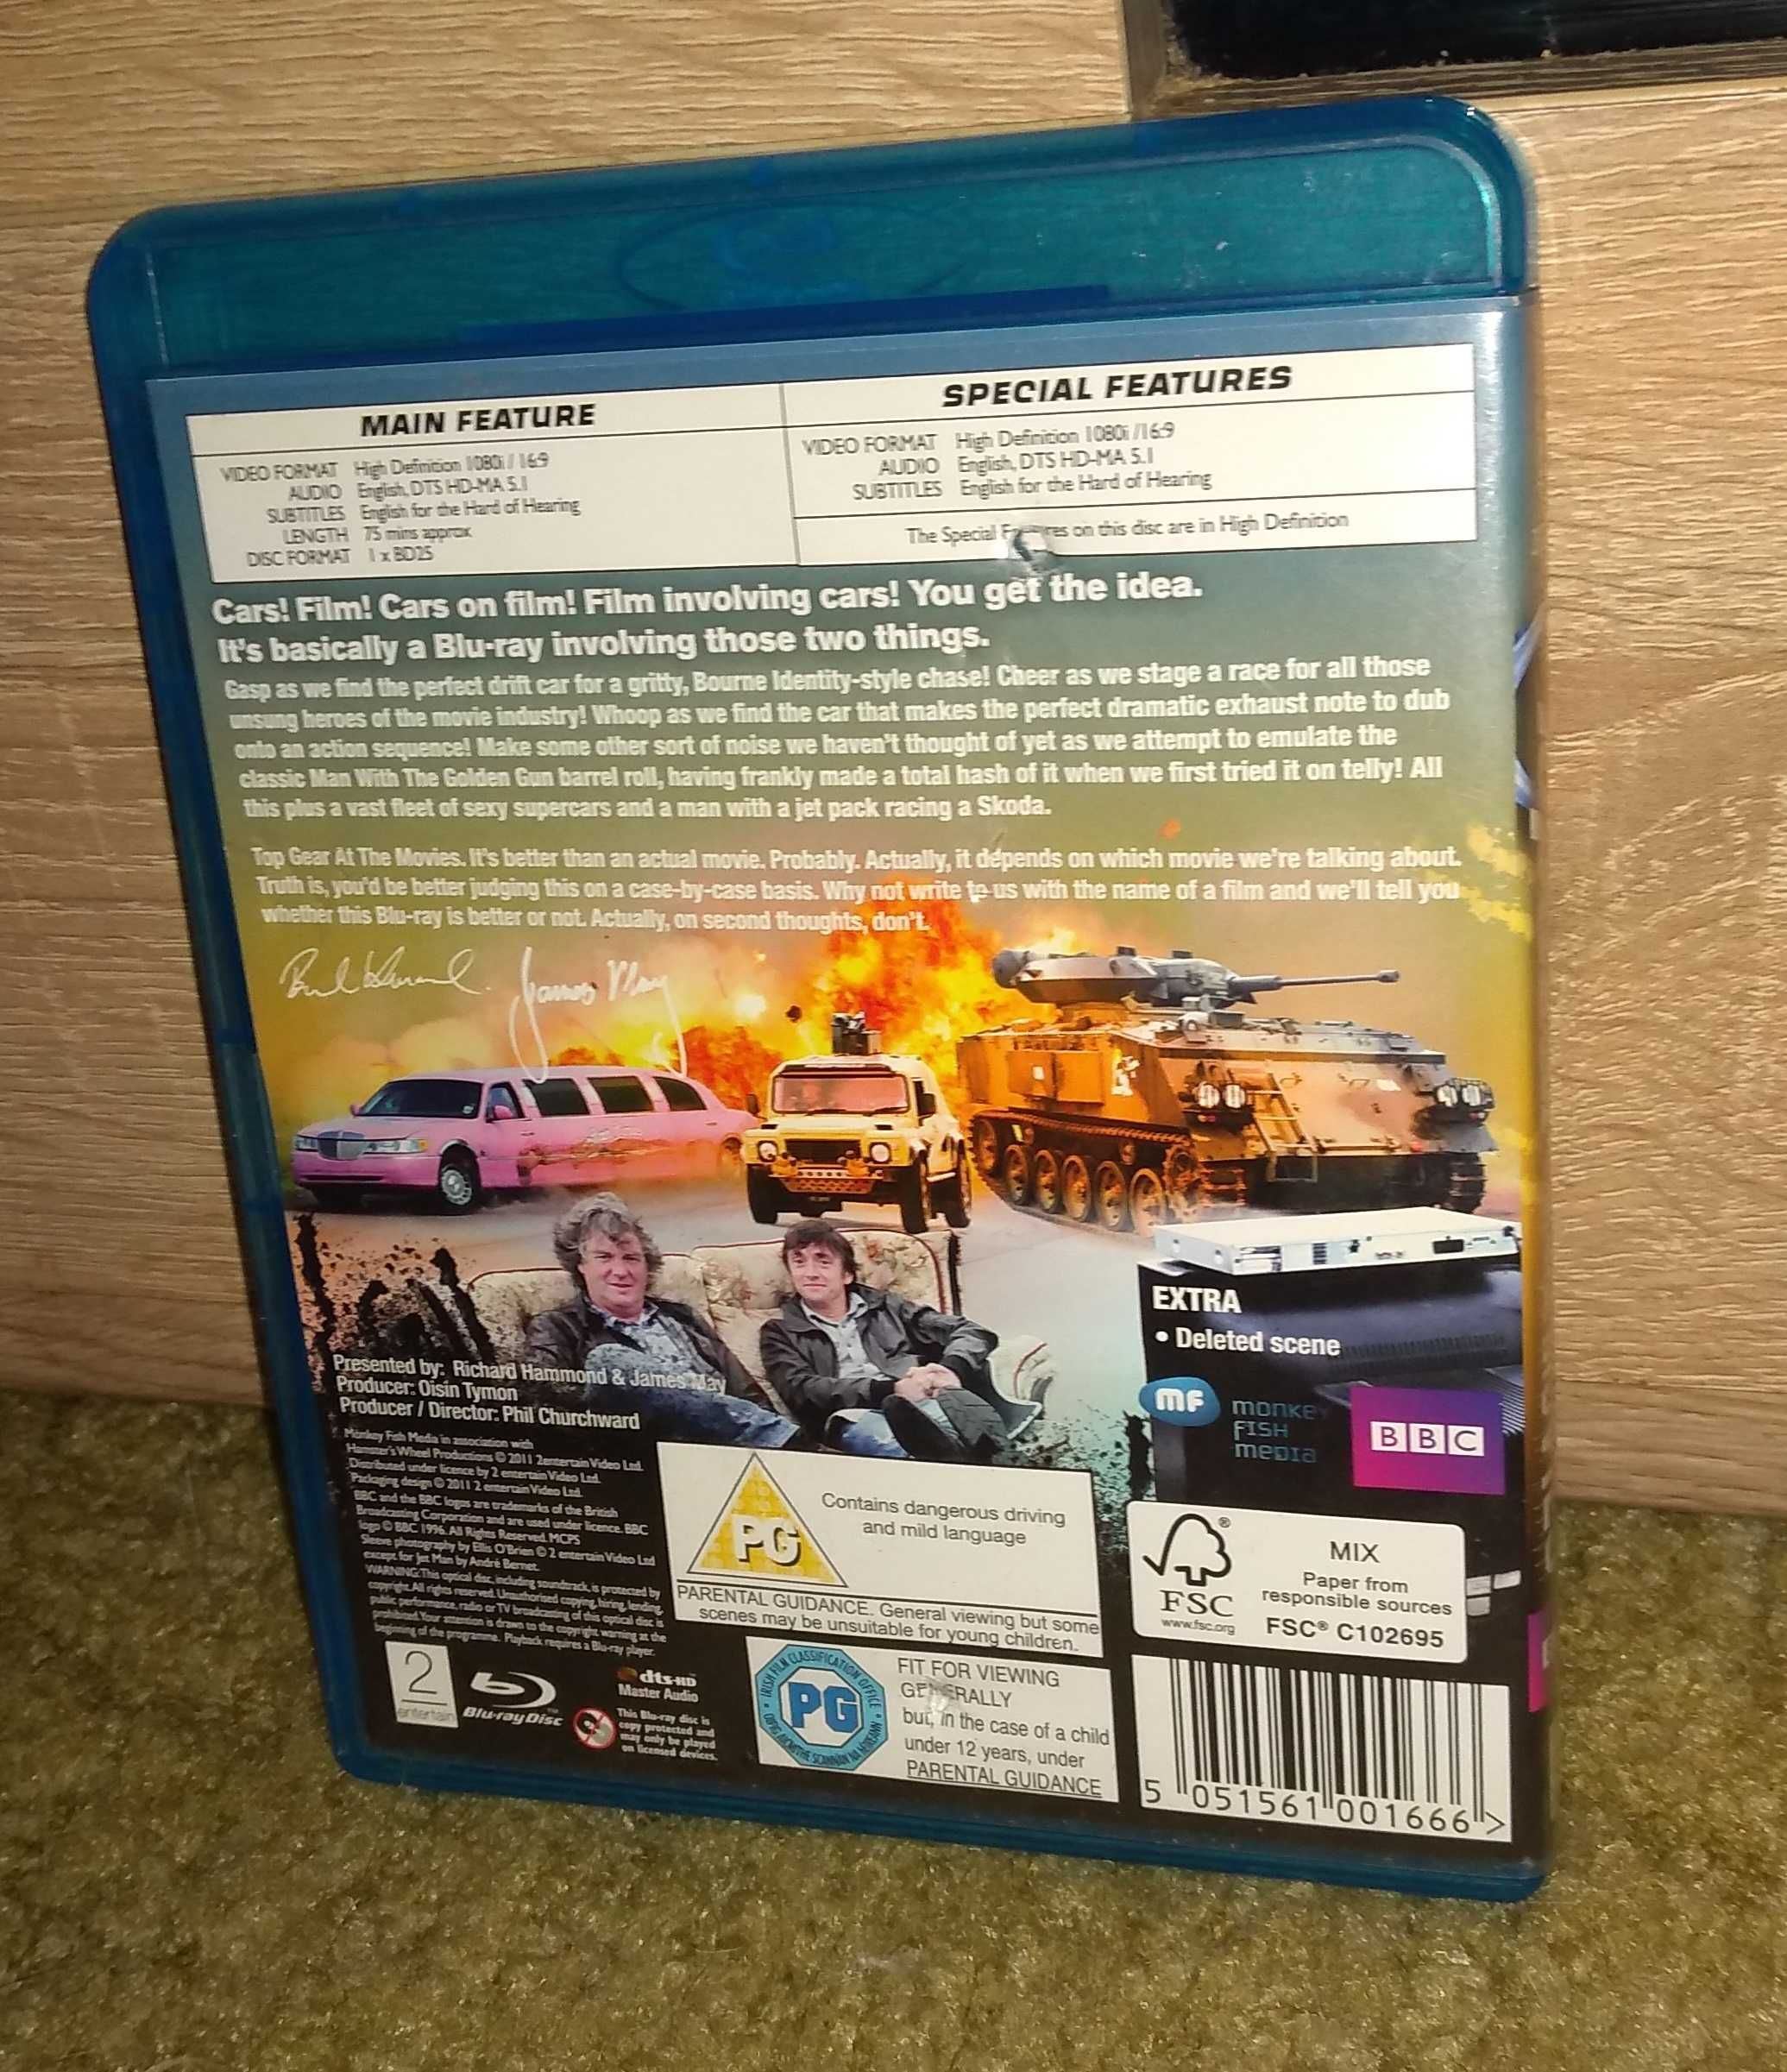 Serial Top Gear: At the Movies BBC / Blu-Ray / Ang /